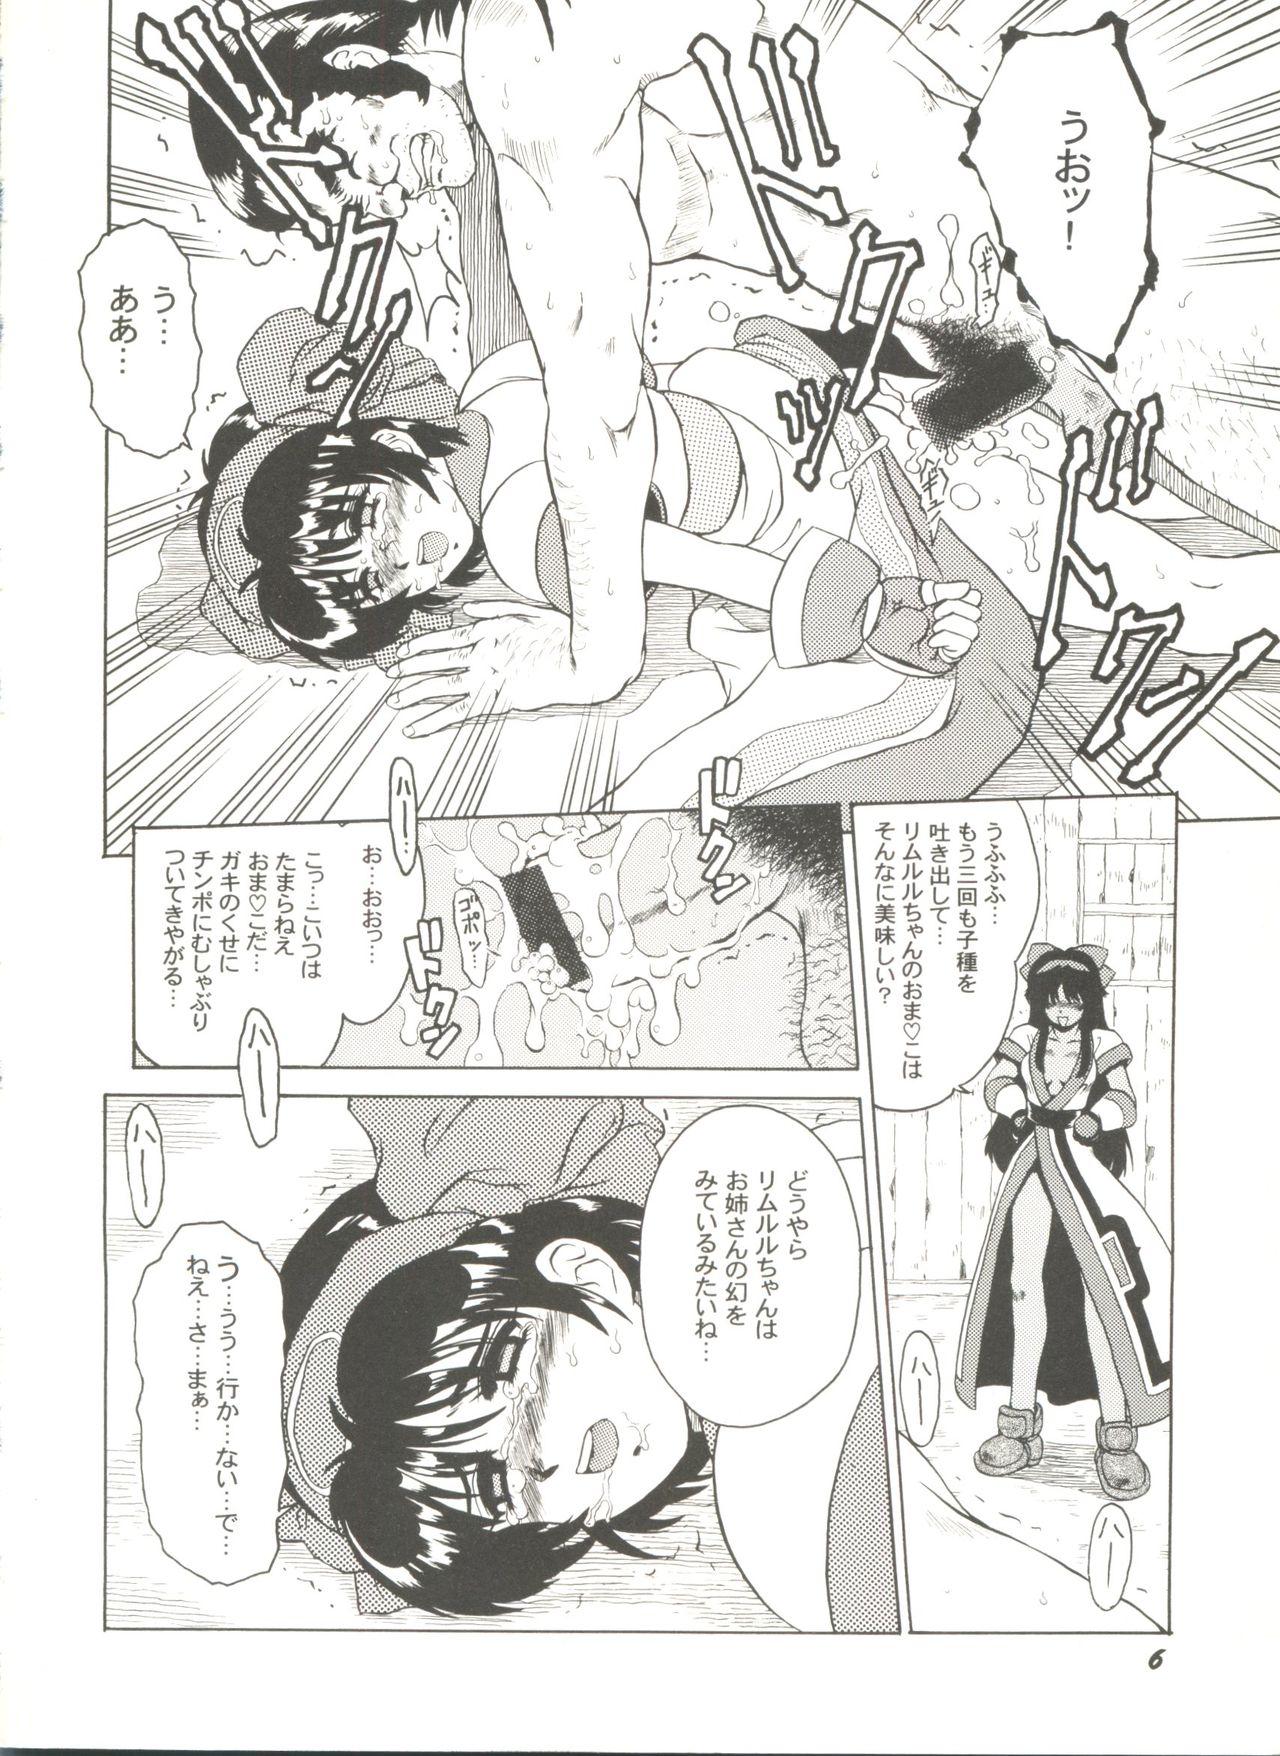 Blow Job Porn Doujin Anthology Bishoujo Gumi 8 - Samurai spirits Sakura taisen Battle athletes Solo - Page 10